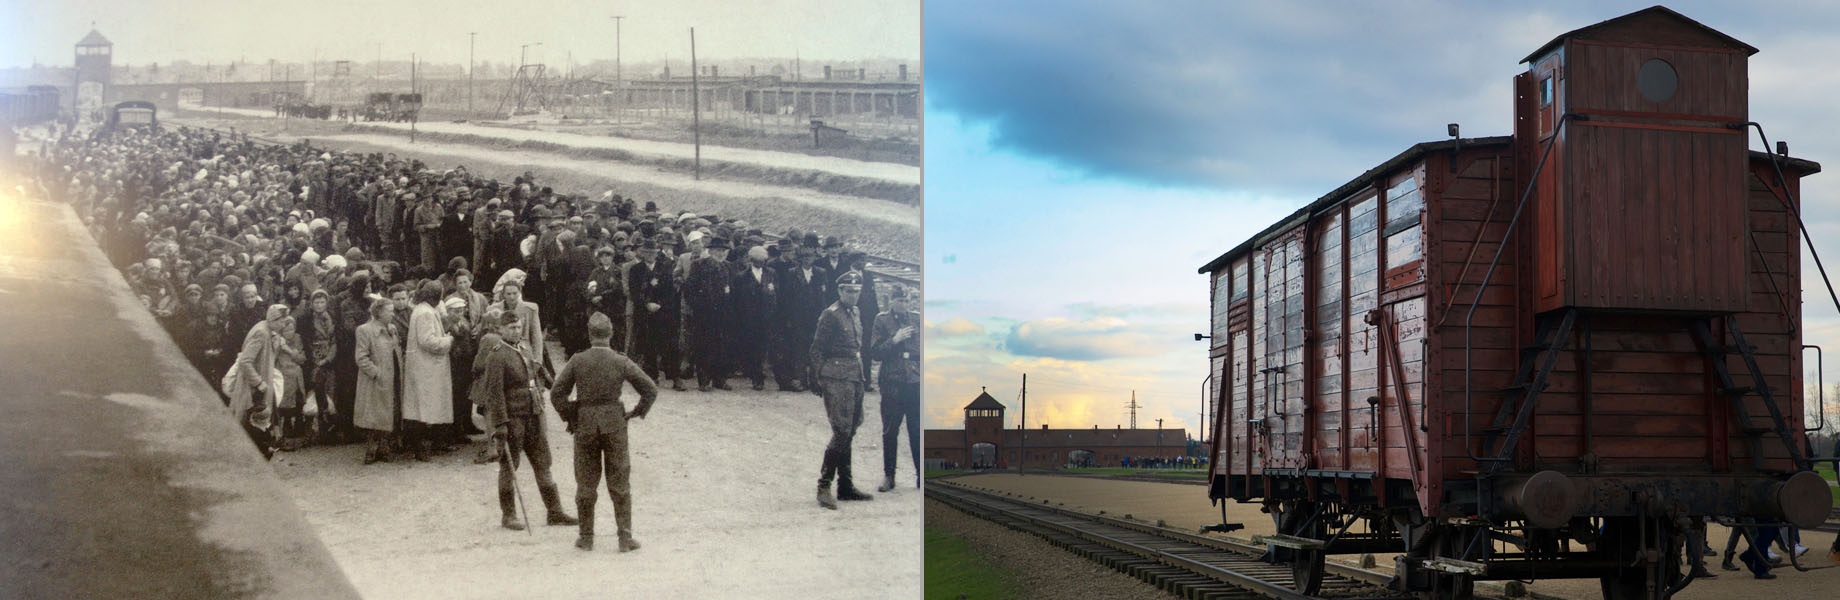 Die sogenannte "Judenrampe" im KZ Auschwitz-II-Birkenau.